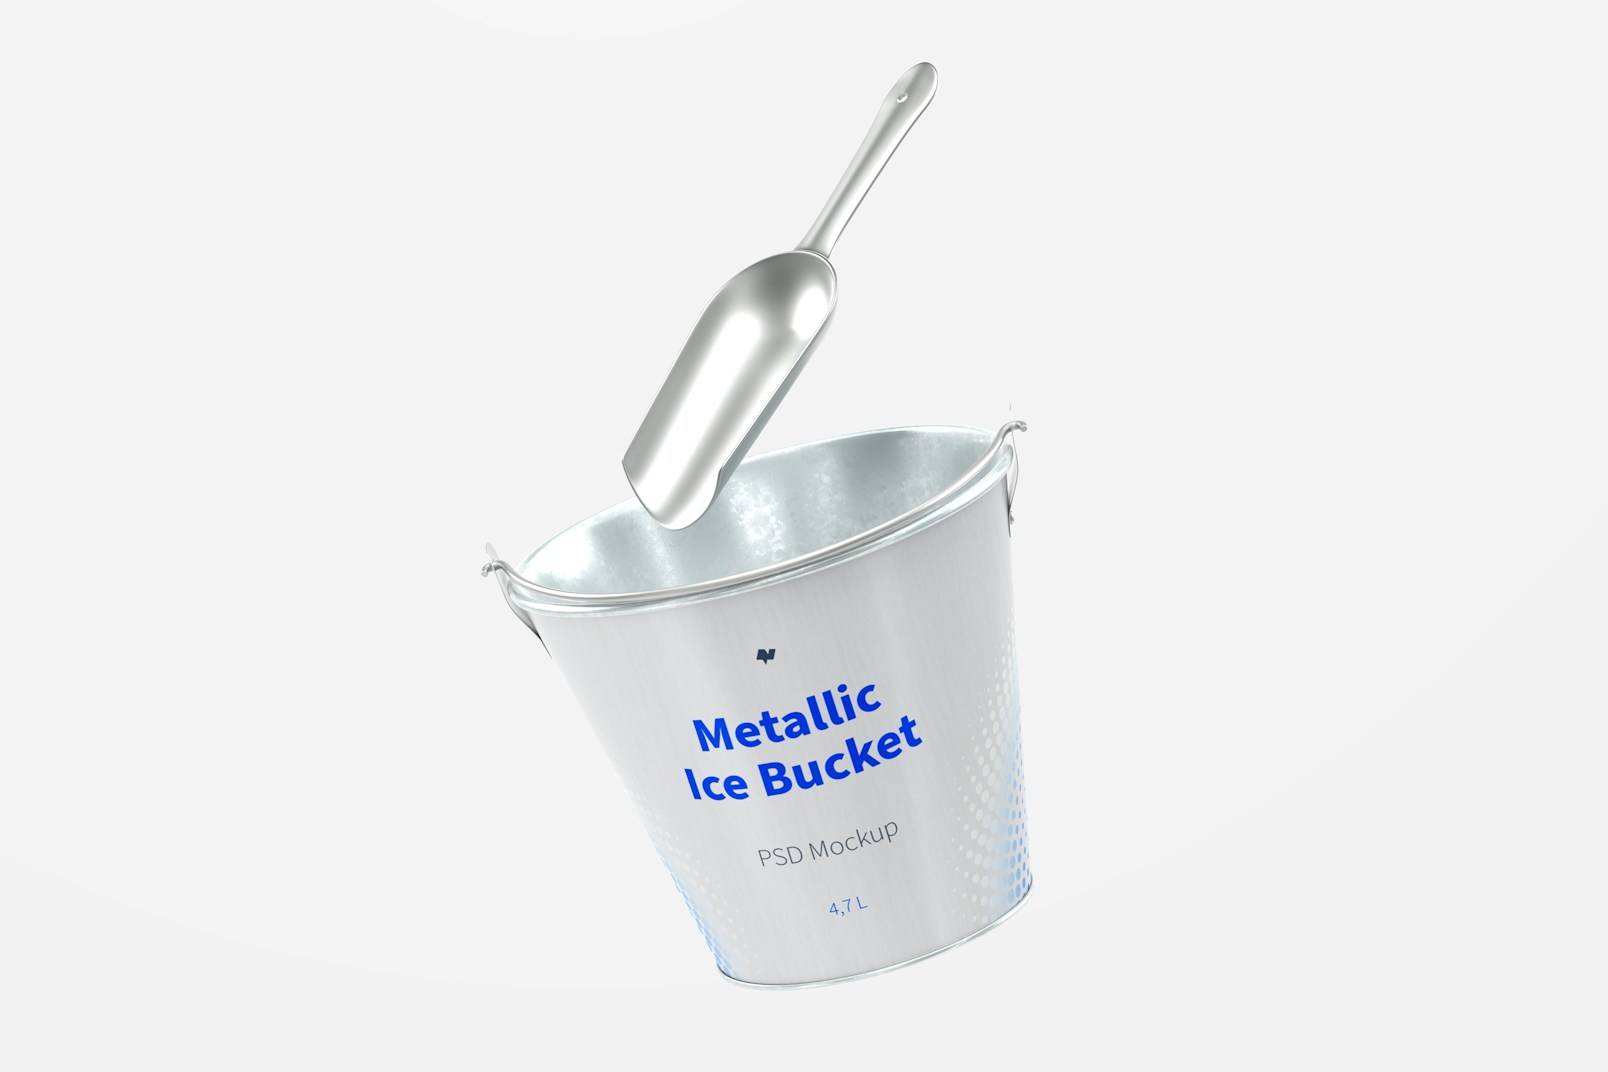 Metallic Ice Bucket Mockup, Floating